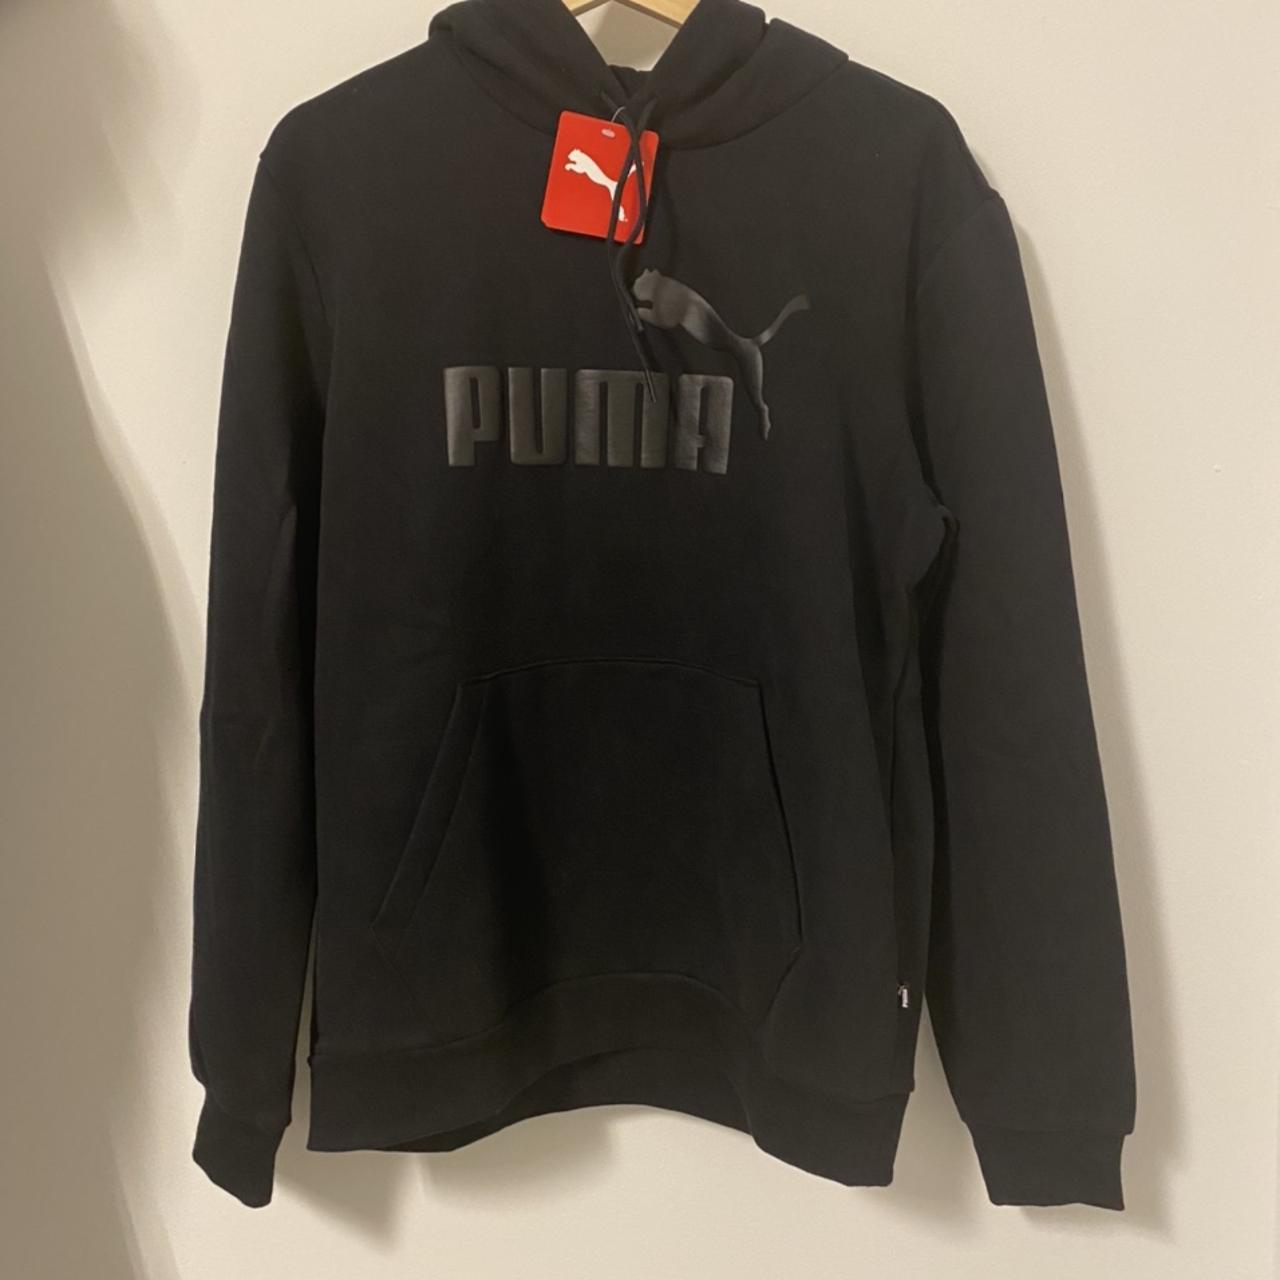 Puma paragon hoodie Colour - Black Size - Men’s... - Depop